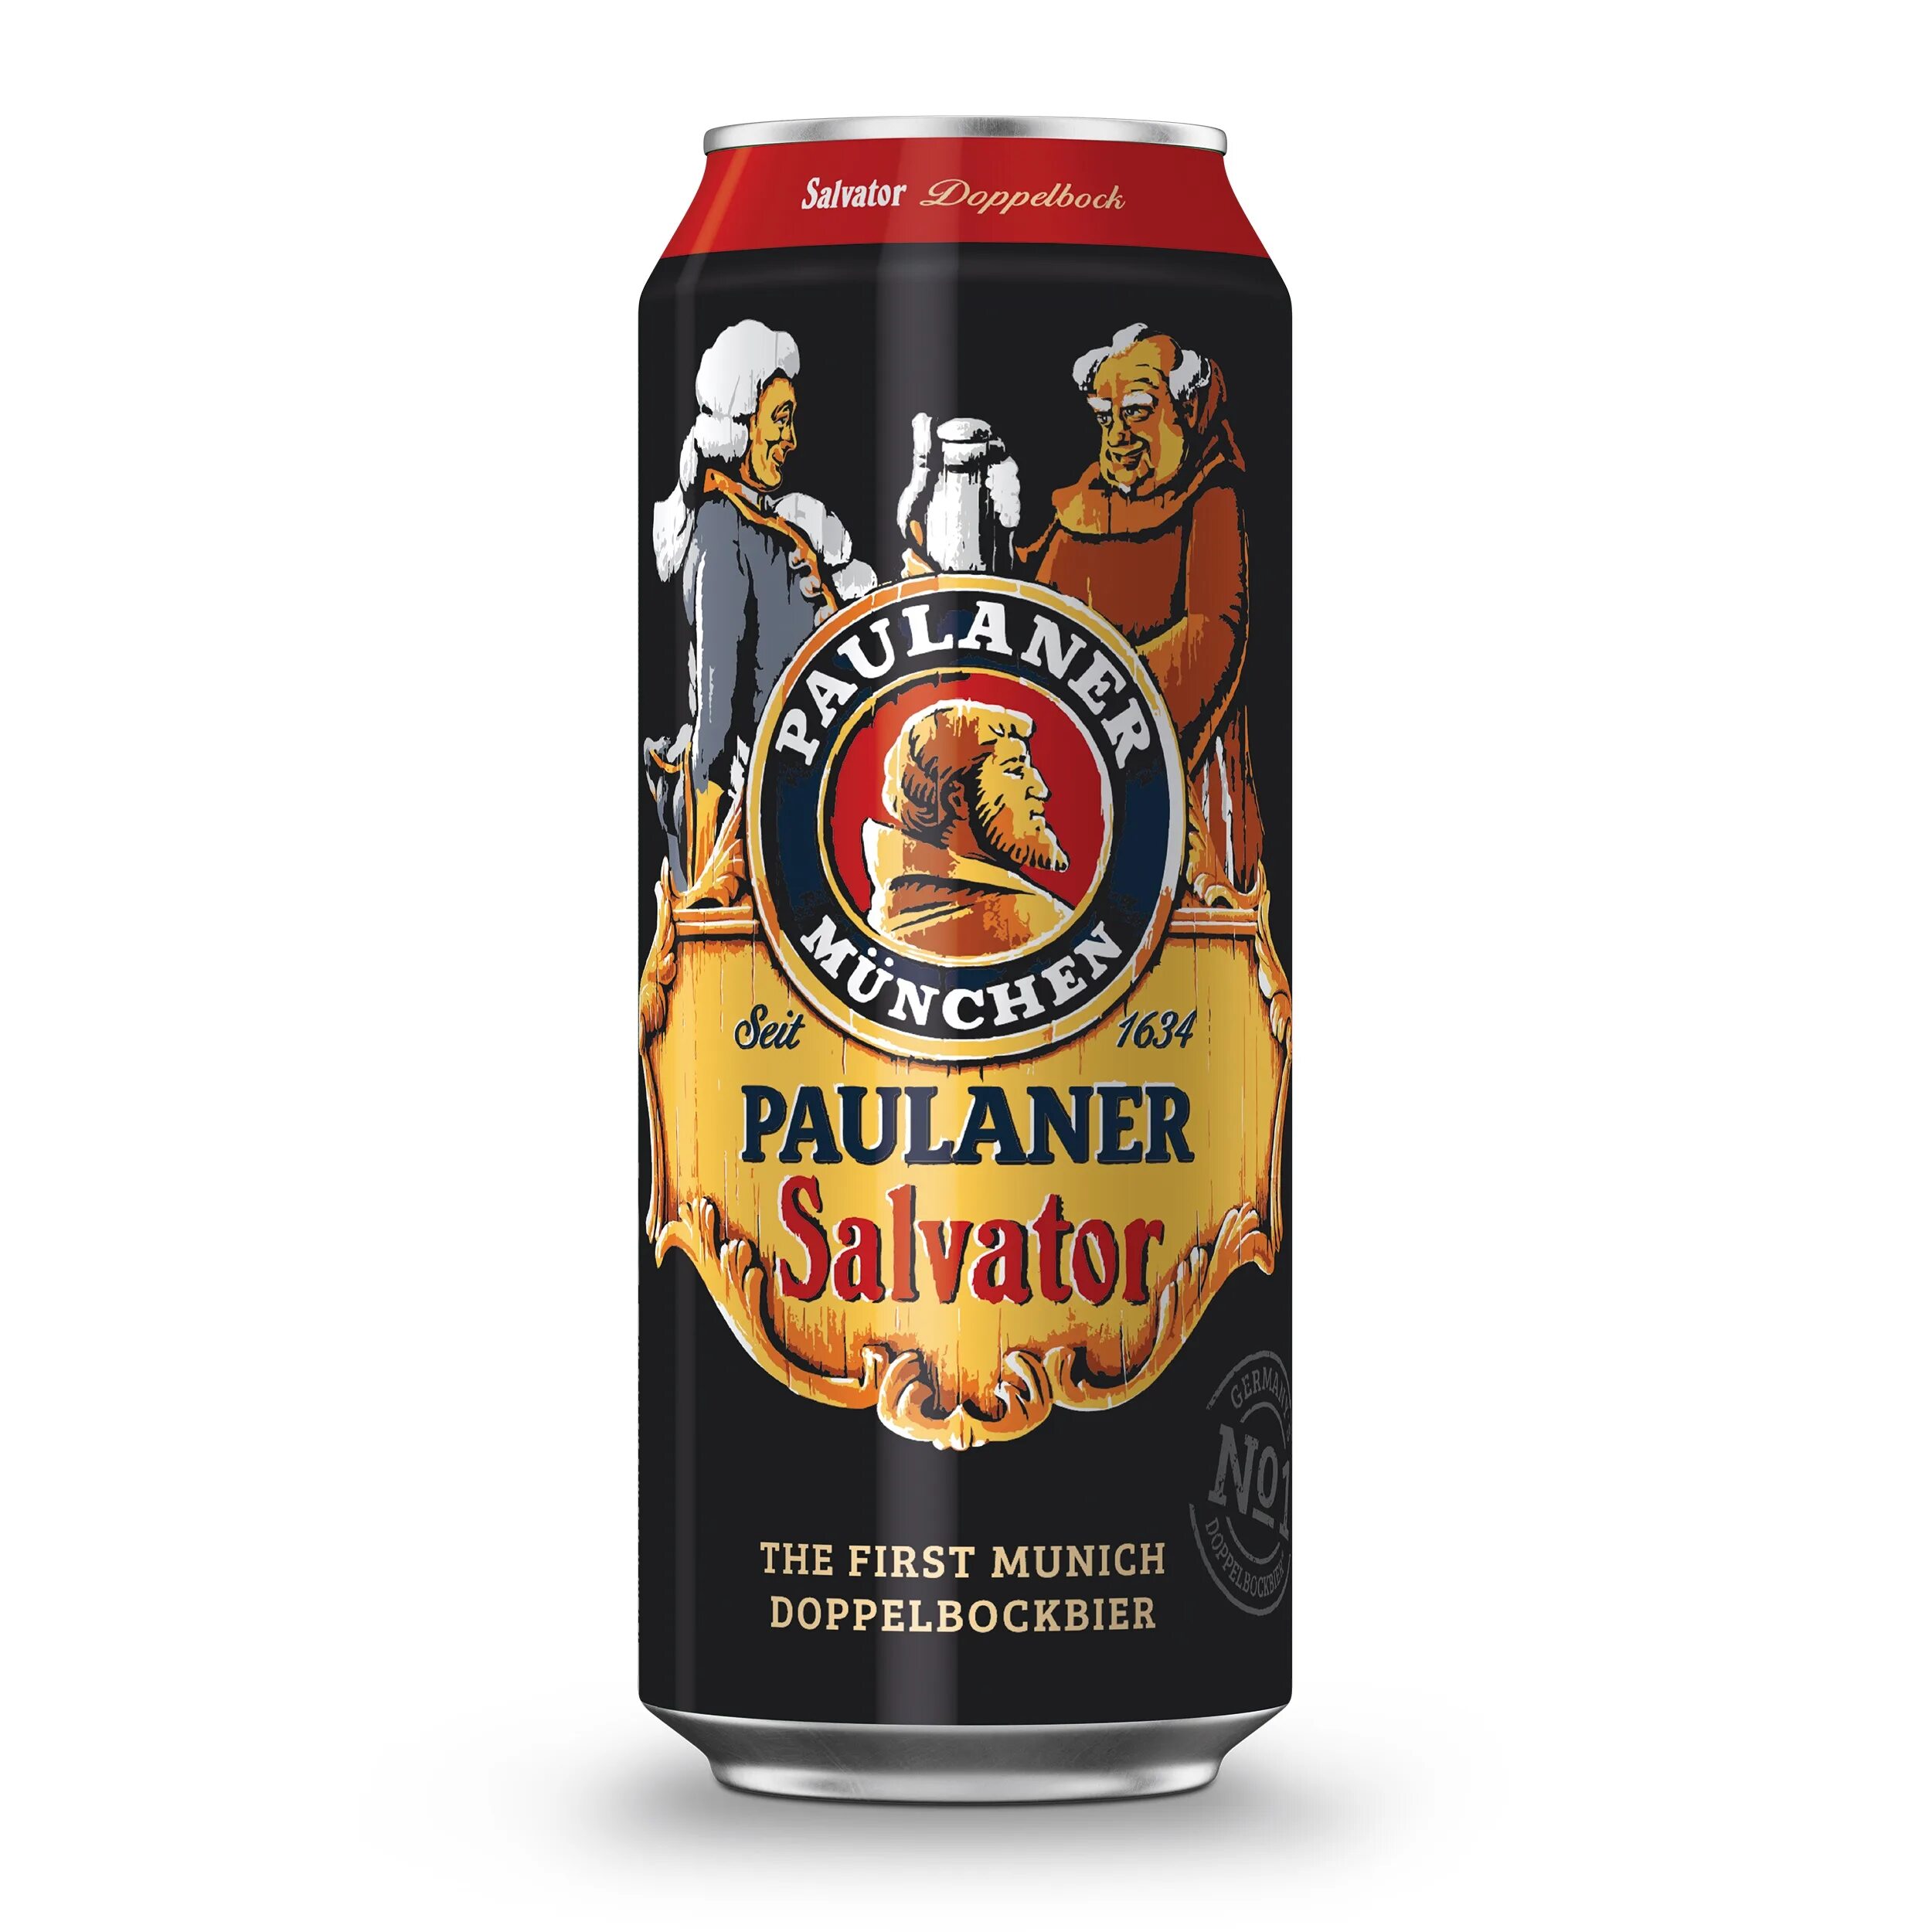 Пиво пауланер купить. Пиво Пауланер крышка. Лента пиво Paulaner Salvator 7.9% тёмное нефильтрованное. Gordon 5 пиво.